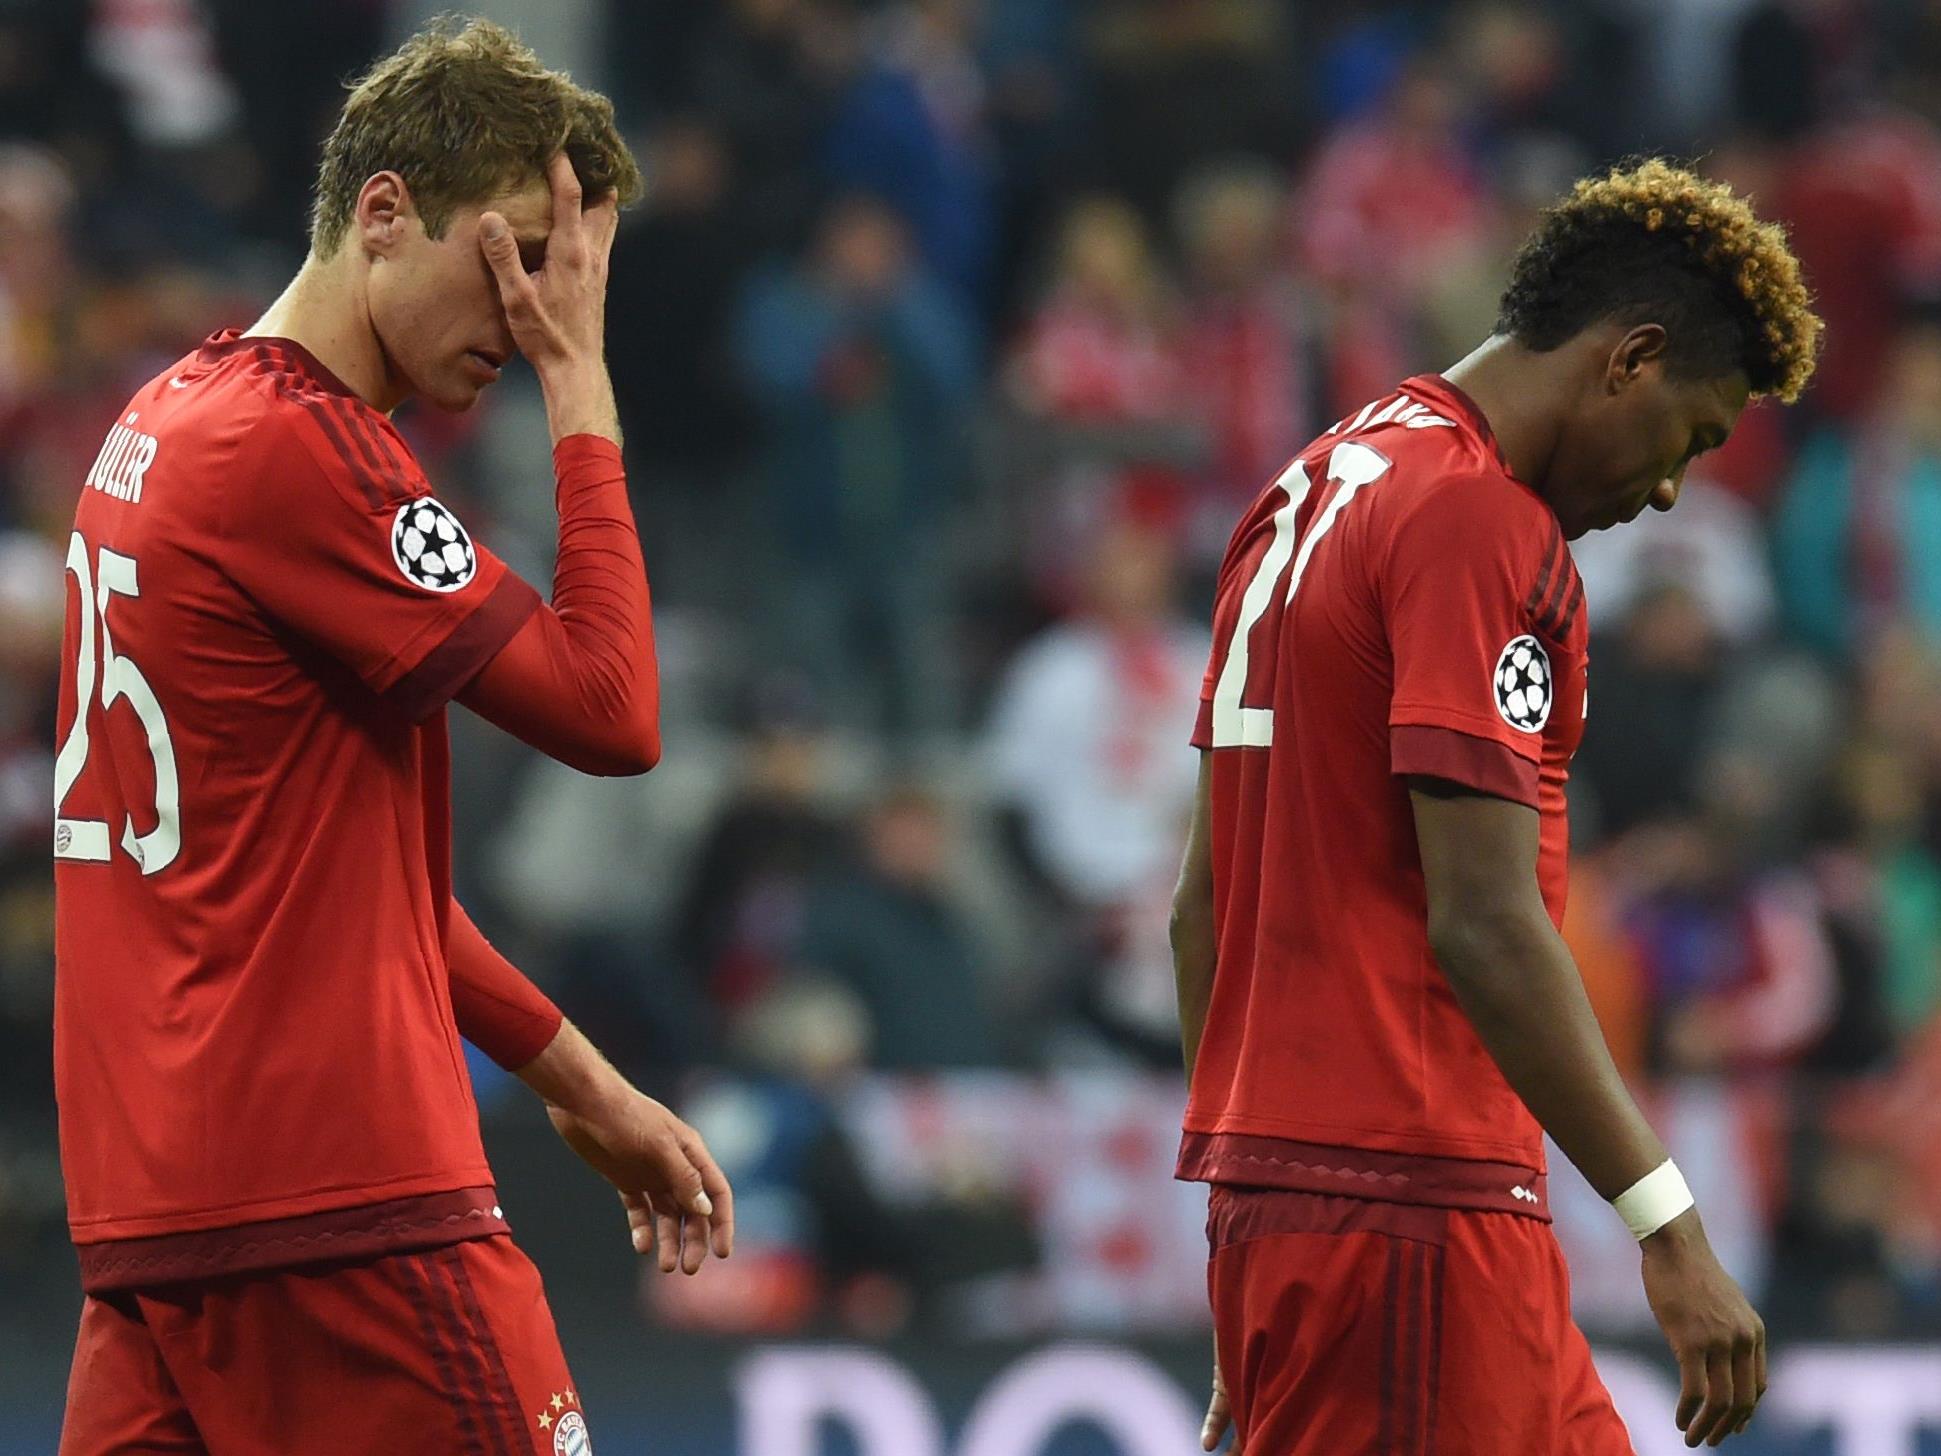 Der FC Bayern besiegt Atlético Madrid in einem mitreißenden Kampf ums Champions-League-Finale - und verlässt den Rasen doch als Verlierer.